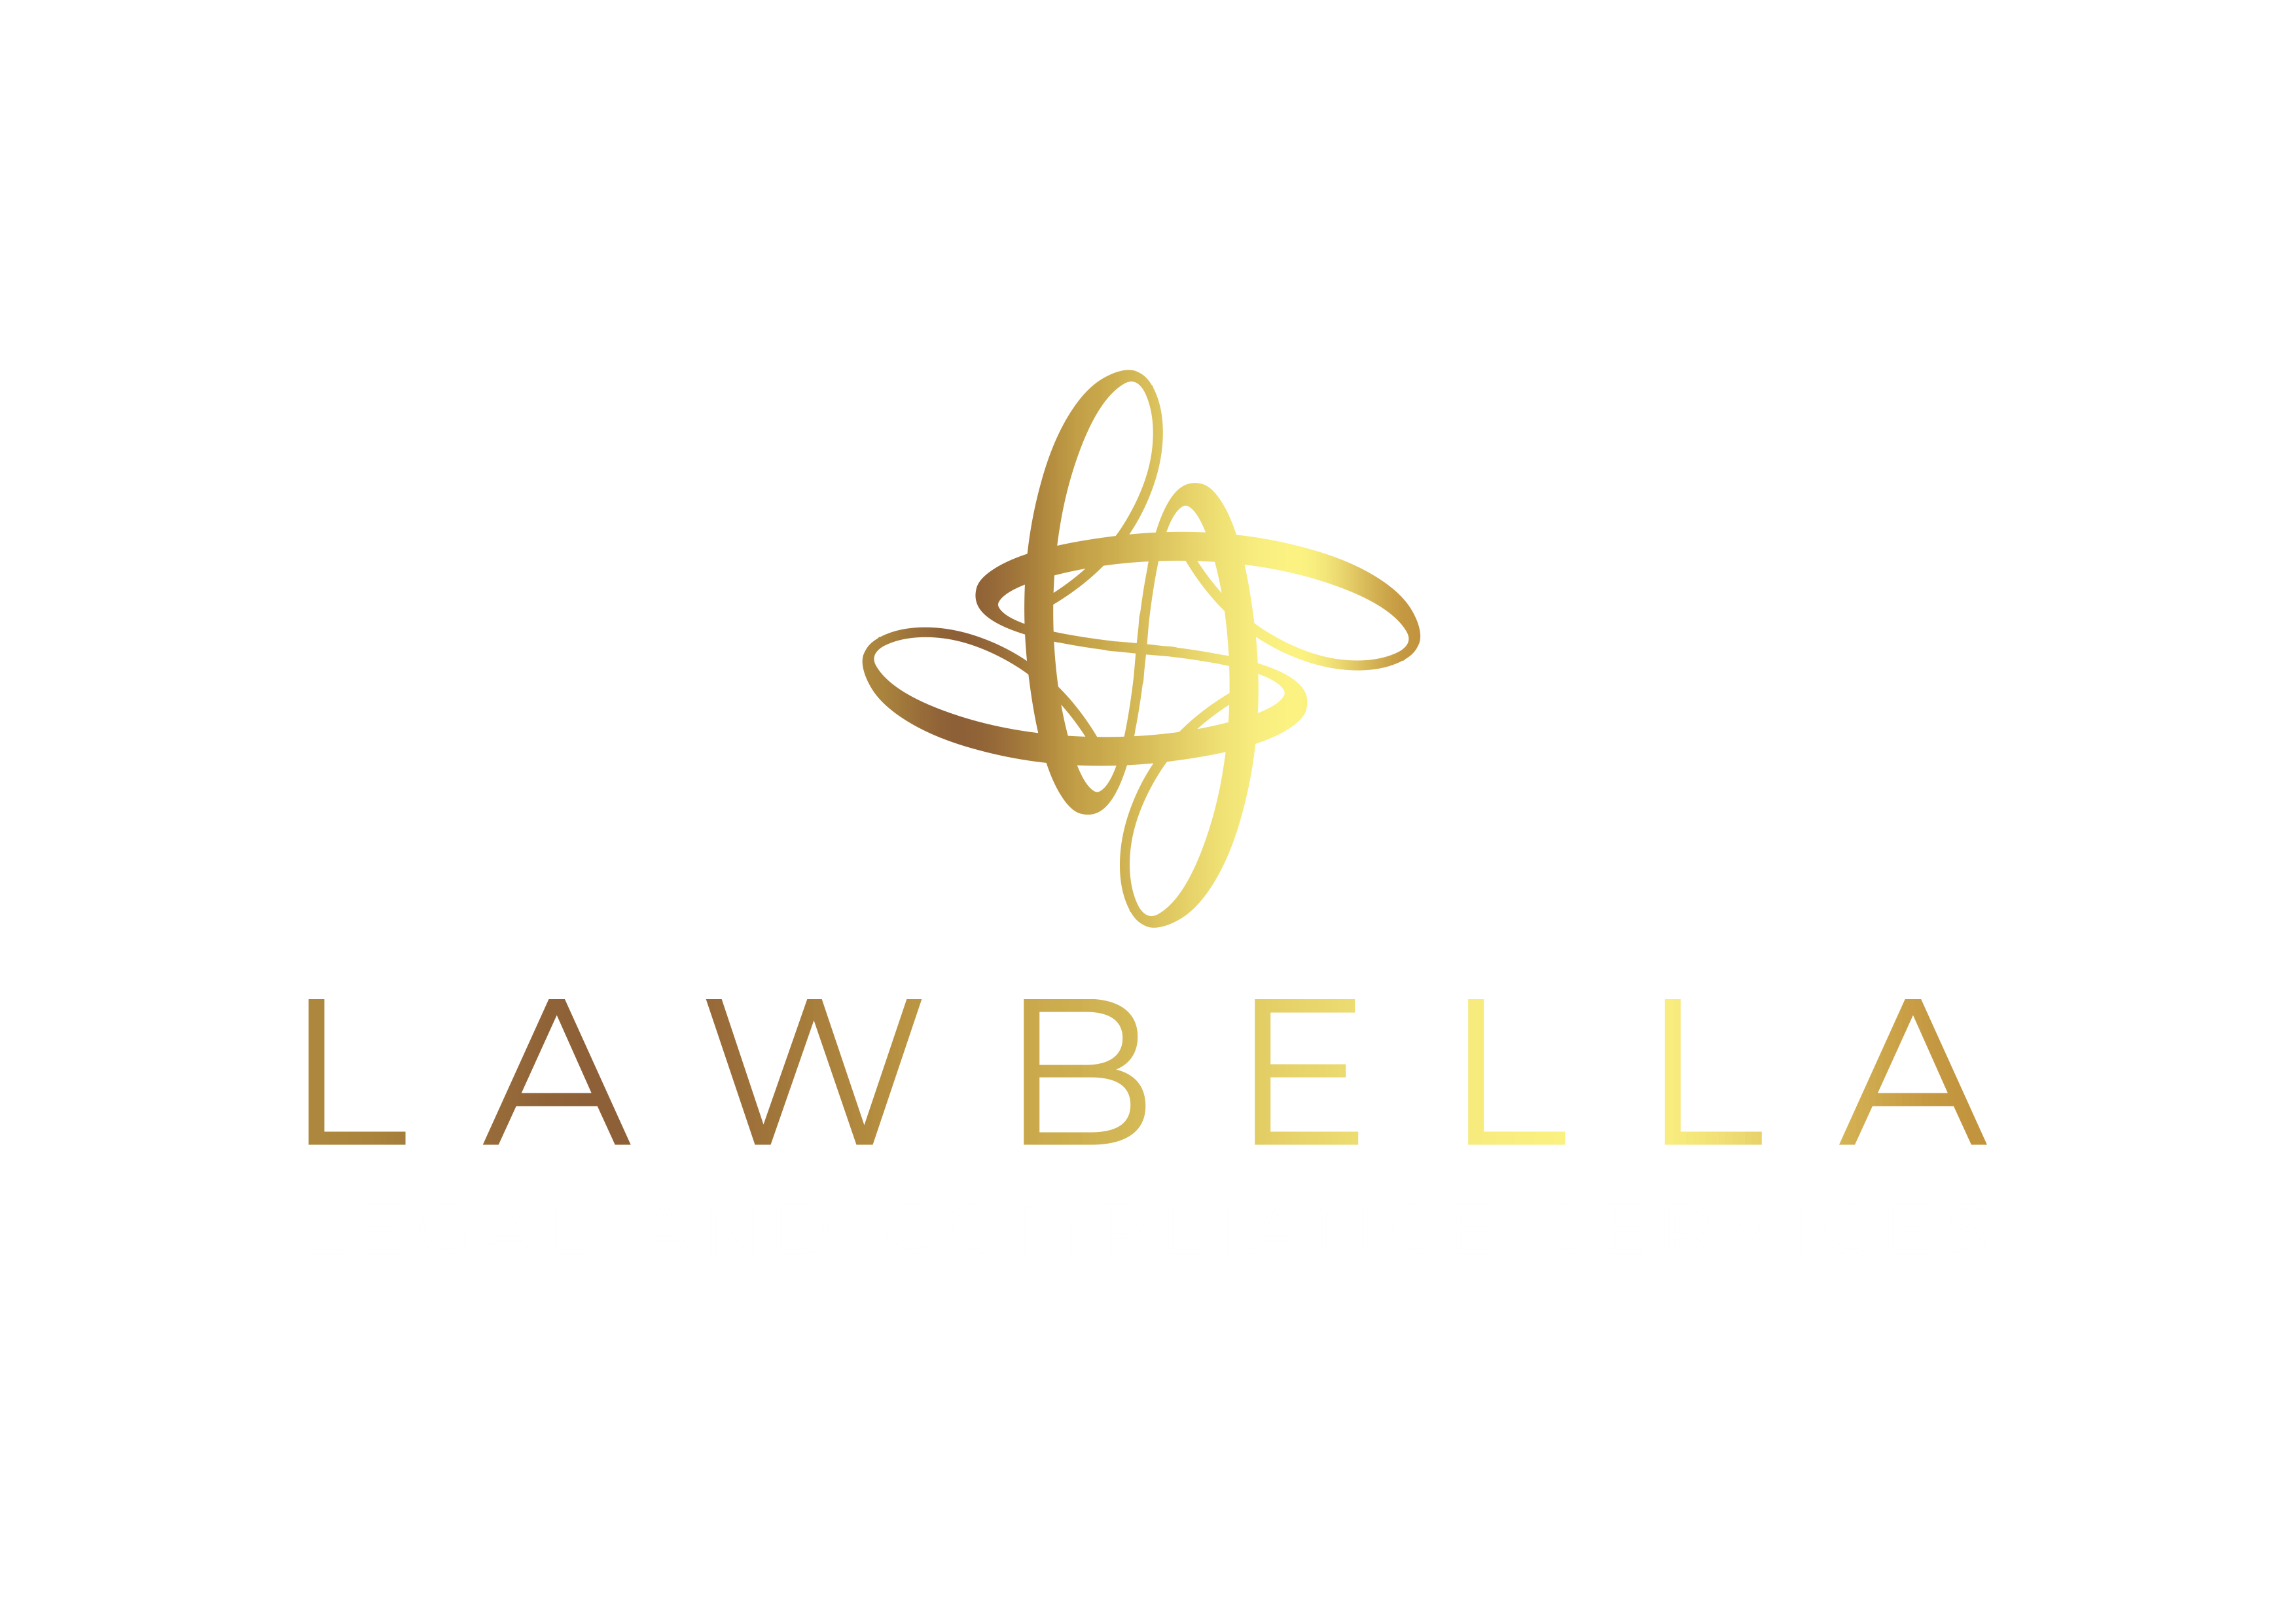 LawBella Image